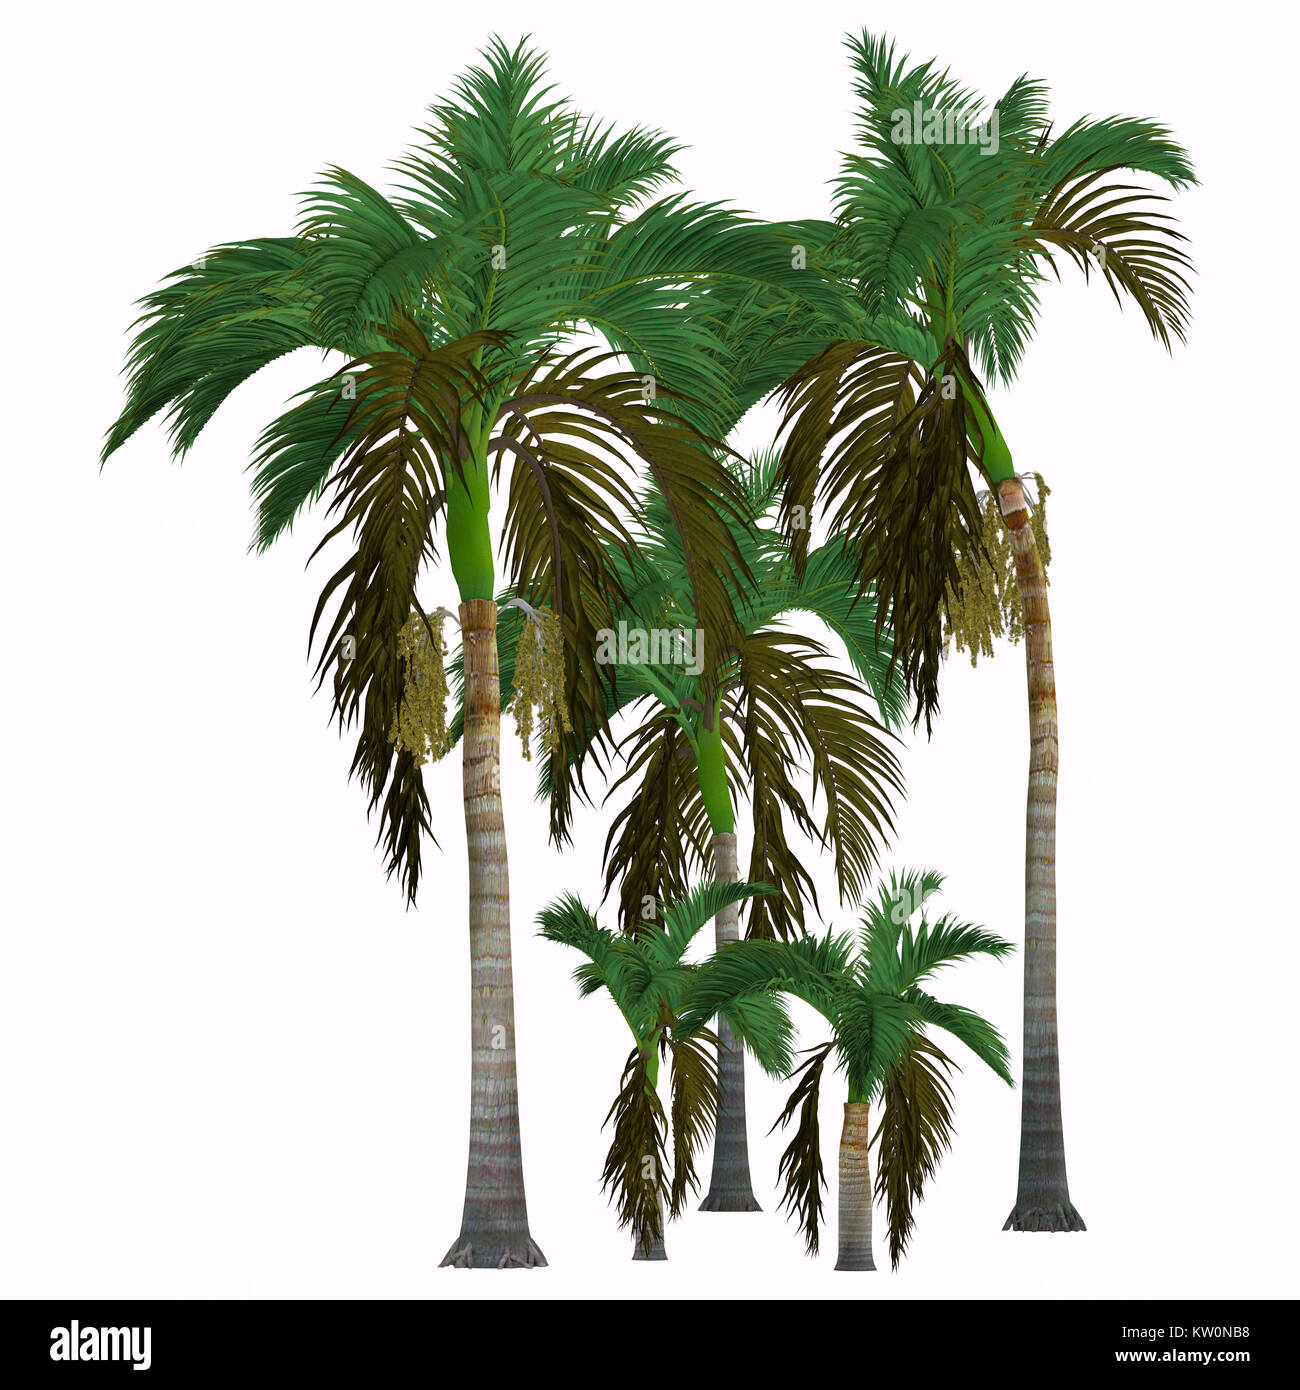 Alexander König Palmen - Dieser tropische Baum wächst in den Regenwald und ist ein palm native von Queensland, Australien. Stockfoto